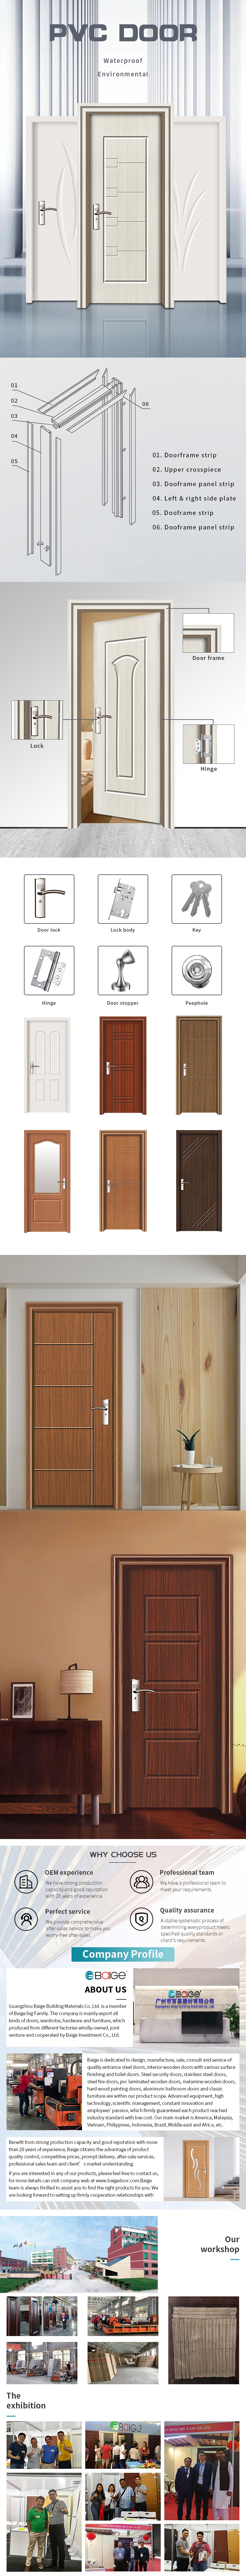 Oak Wood Solid Wood Door MDF HDF BoardPVC Wooden Doors for Interior and Apartment Room Door